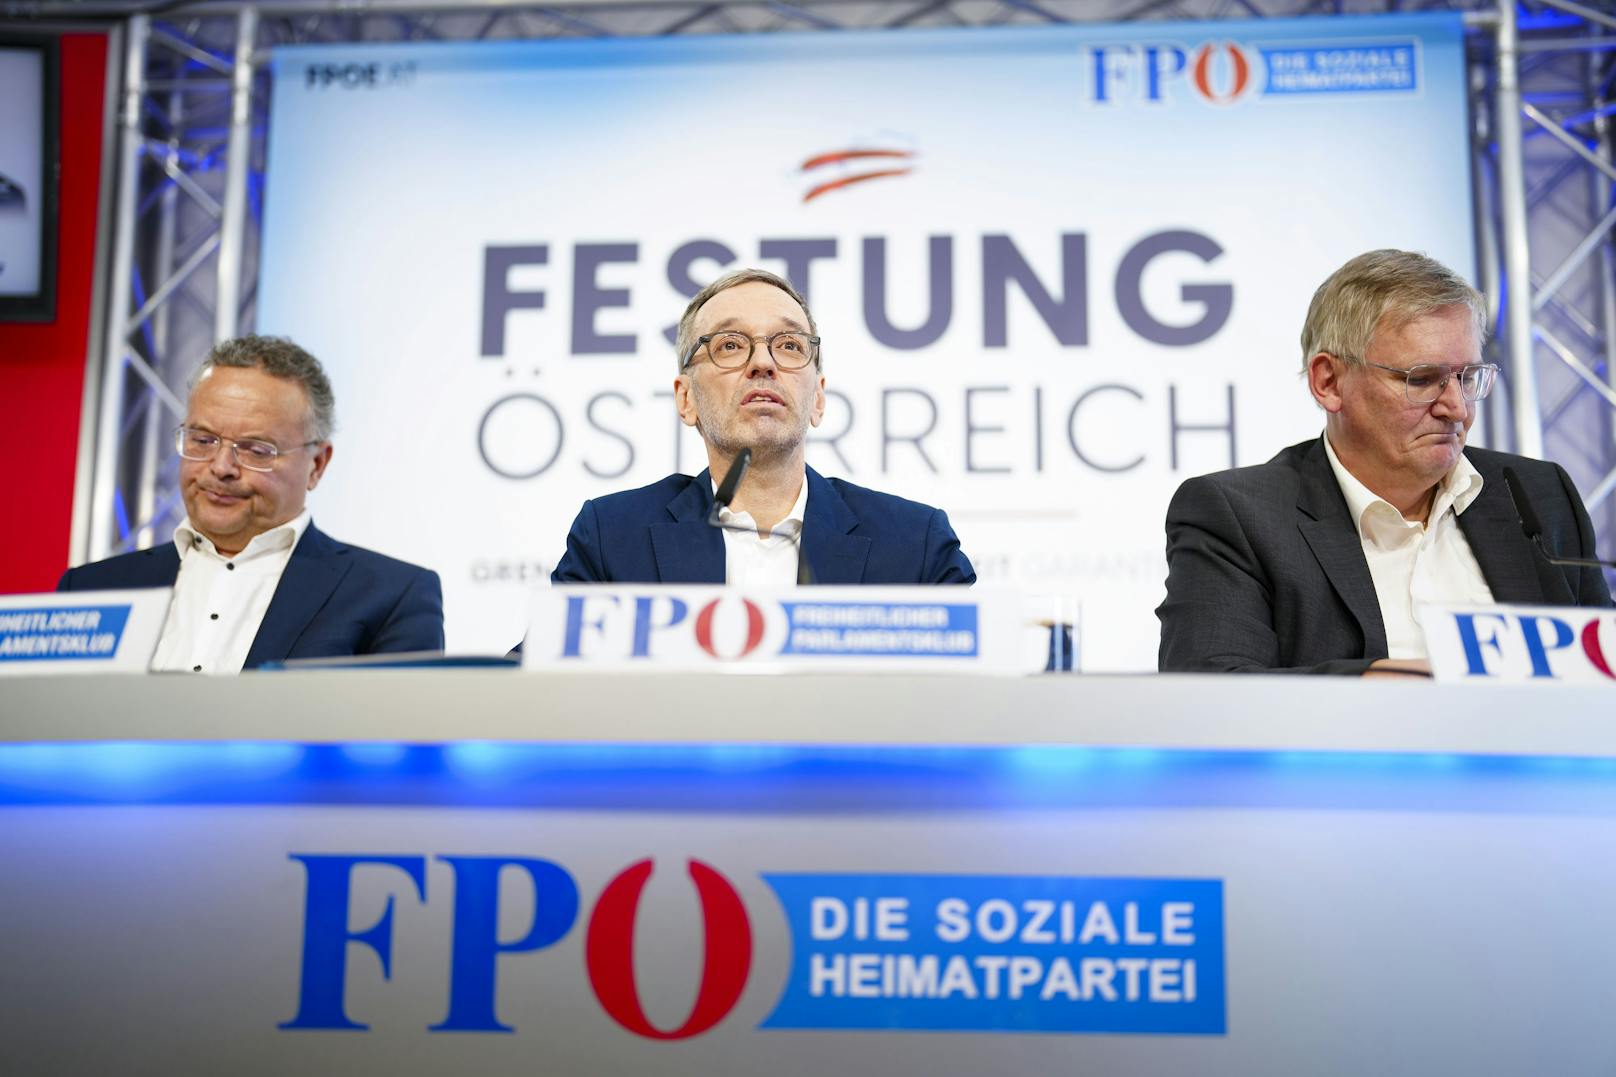 FPÖ-Nationalrat Gerald Hauser, FPÖ-Obmann Herbert Kickl und Urologe Hannes Strasser bei der Buchpräsentation.